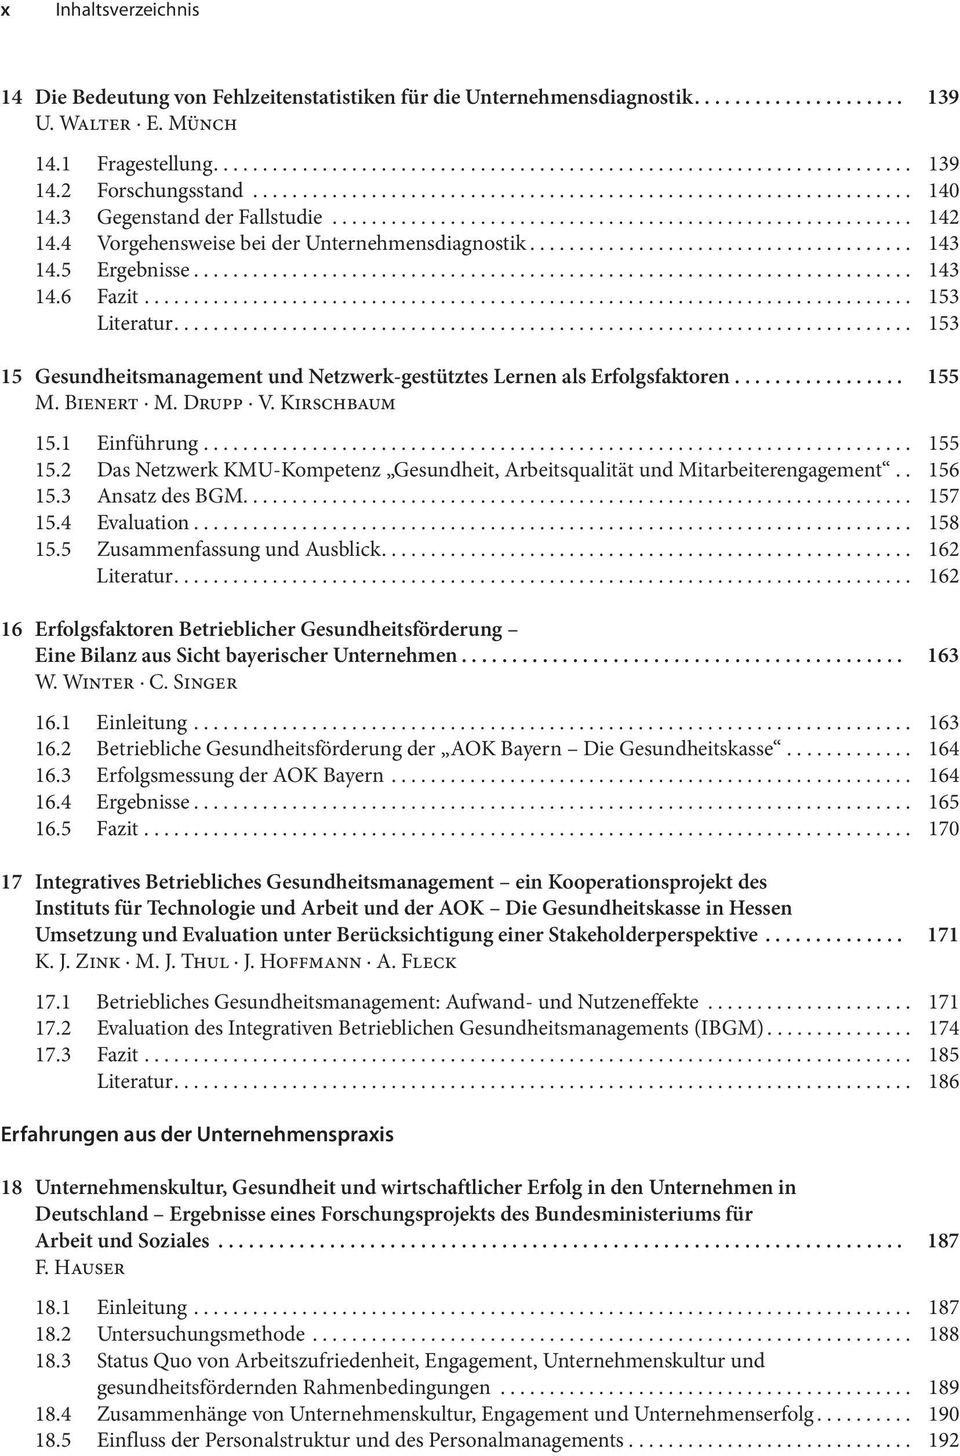 Bienert M. Drupp V. Kirschbaum 15.1 Einführung... 155 15.2 Das Netzwerk KMU-Kompetenz Gesundheit, Arbeitsqualität und Mitarbeiterengagement.. 156 15.3 Ansatz des BGM.... 157 15.4 Evaluation... 158 15.